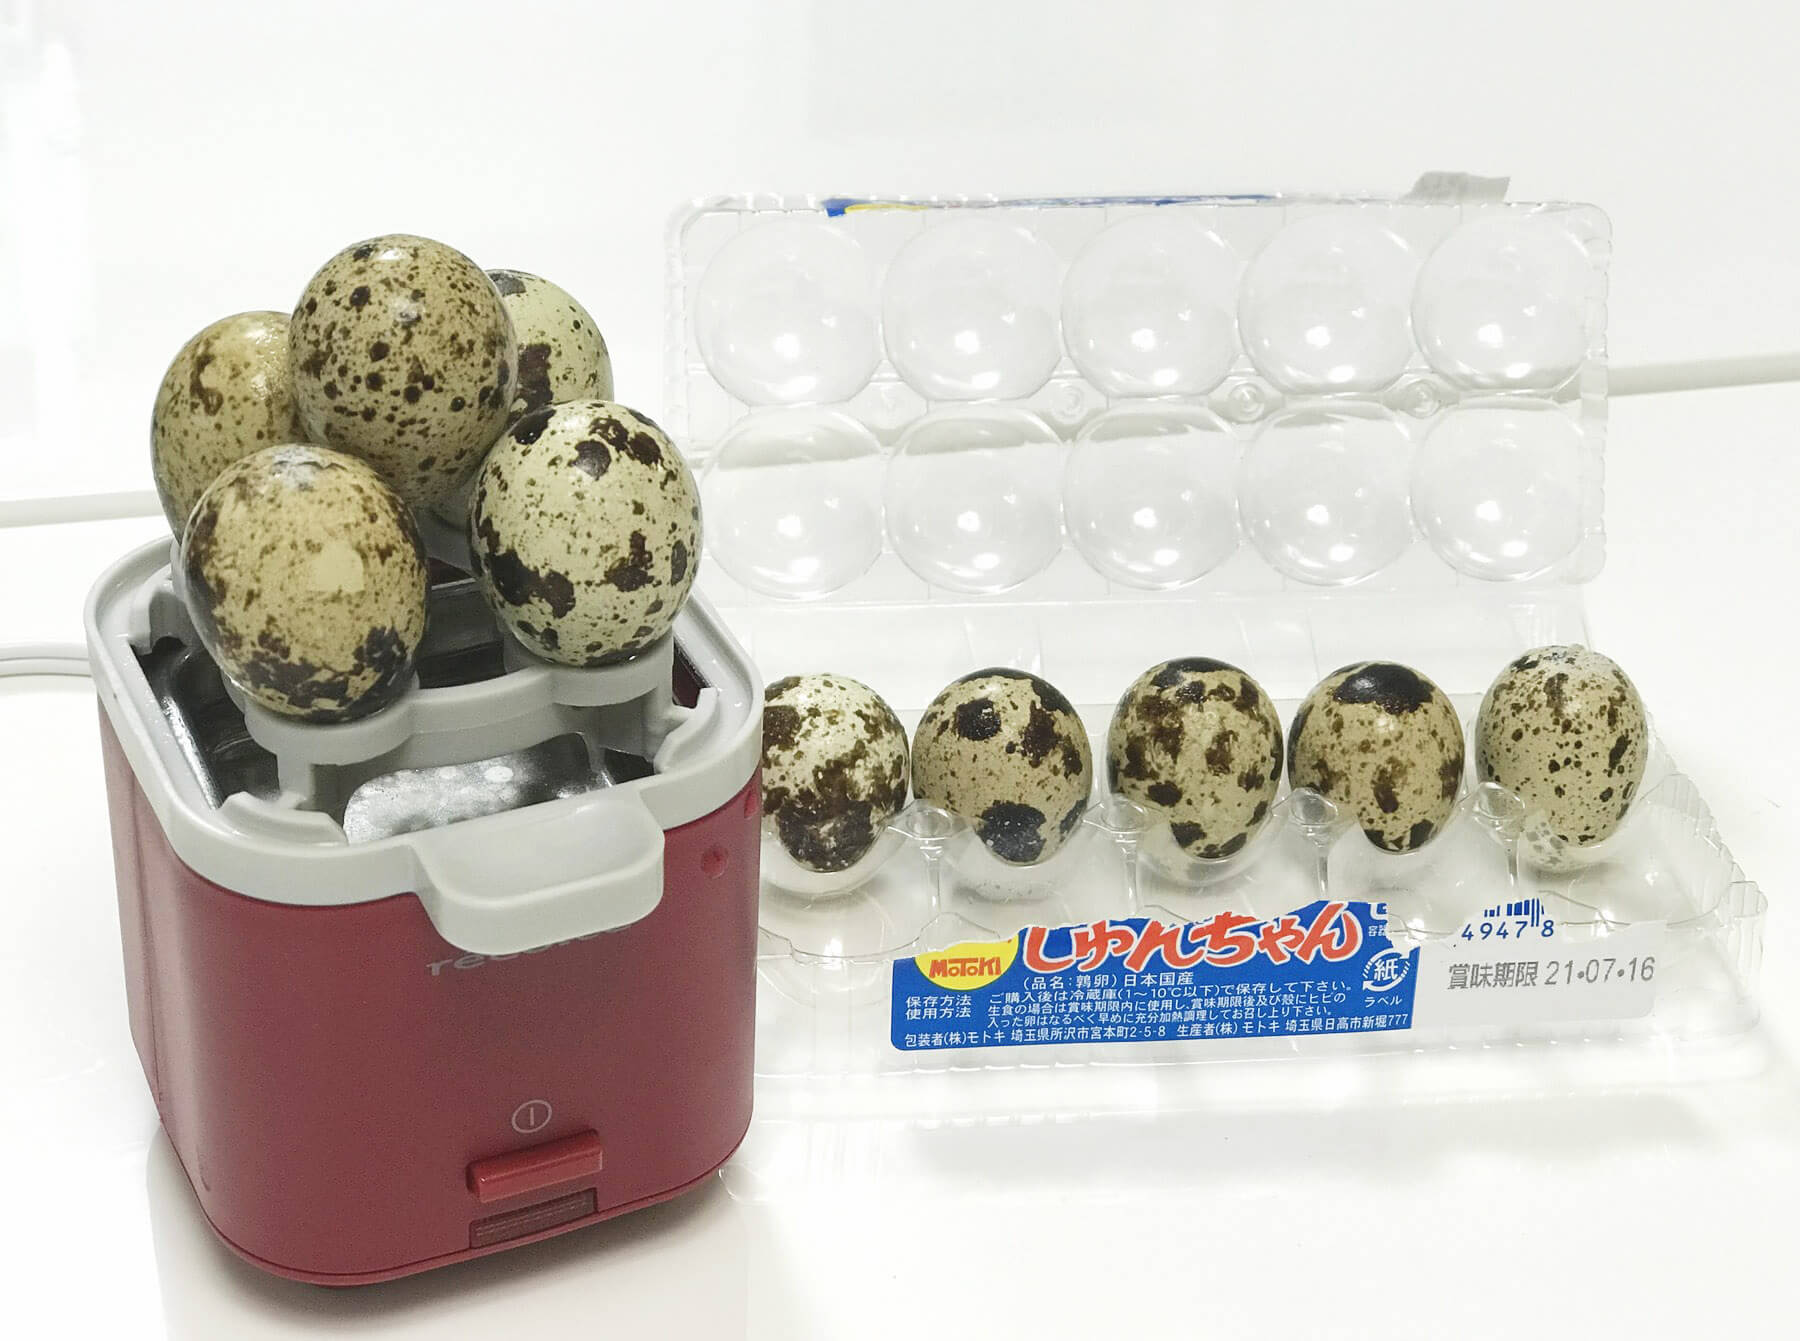 リバーシブルトレイをくるりとひっくり返すと、うずらの卵が一度に5個ゆでられます